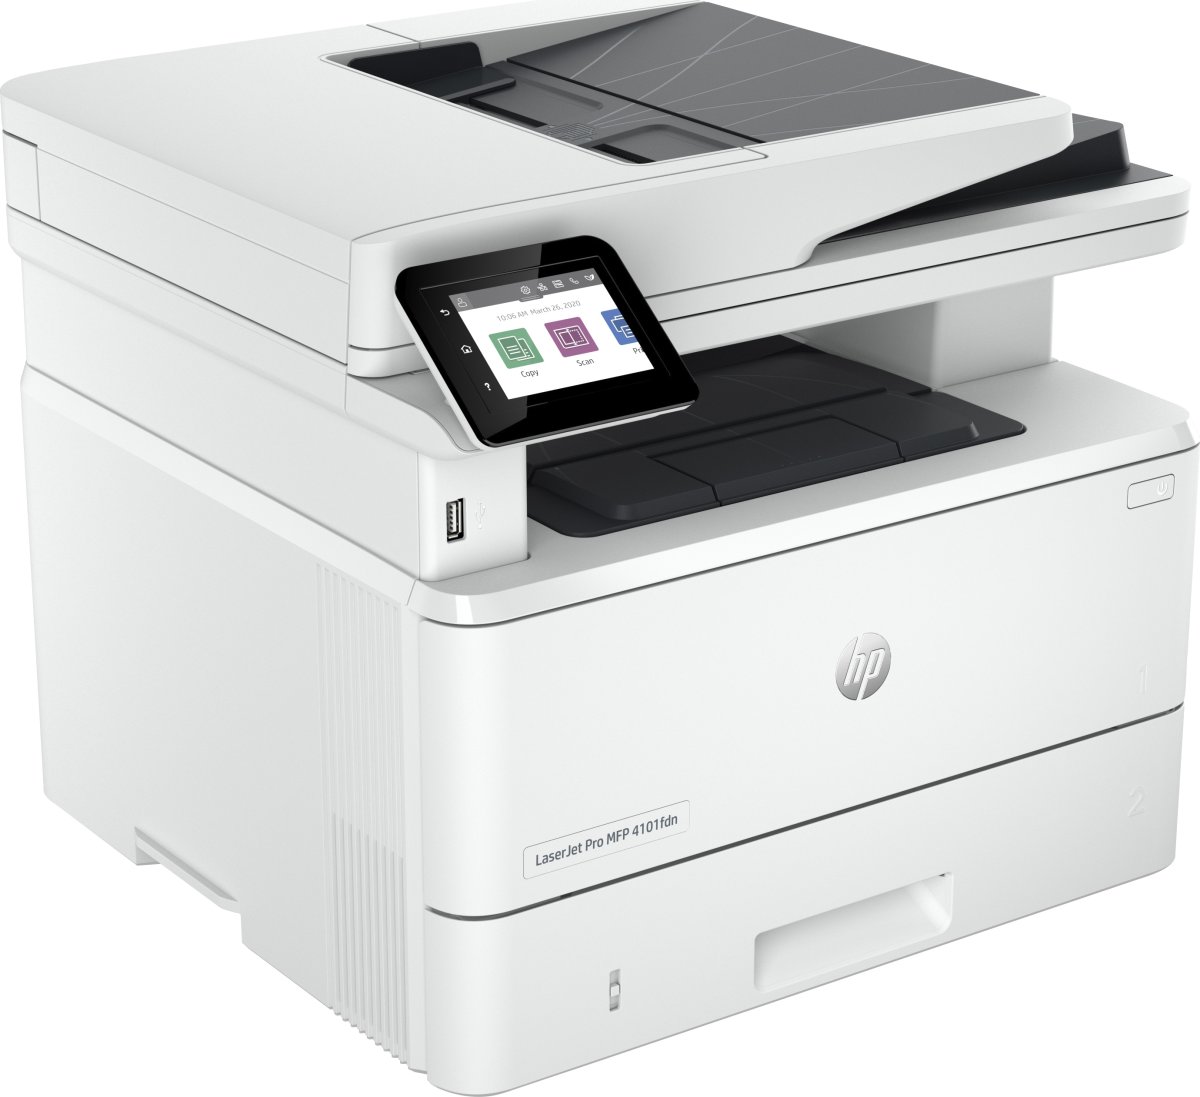 HP LaserJet Pro MFP 4102fdn, print/kopi/scan/fax